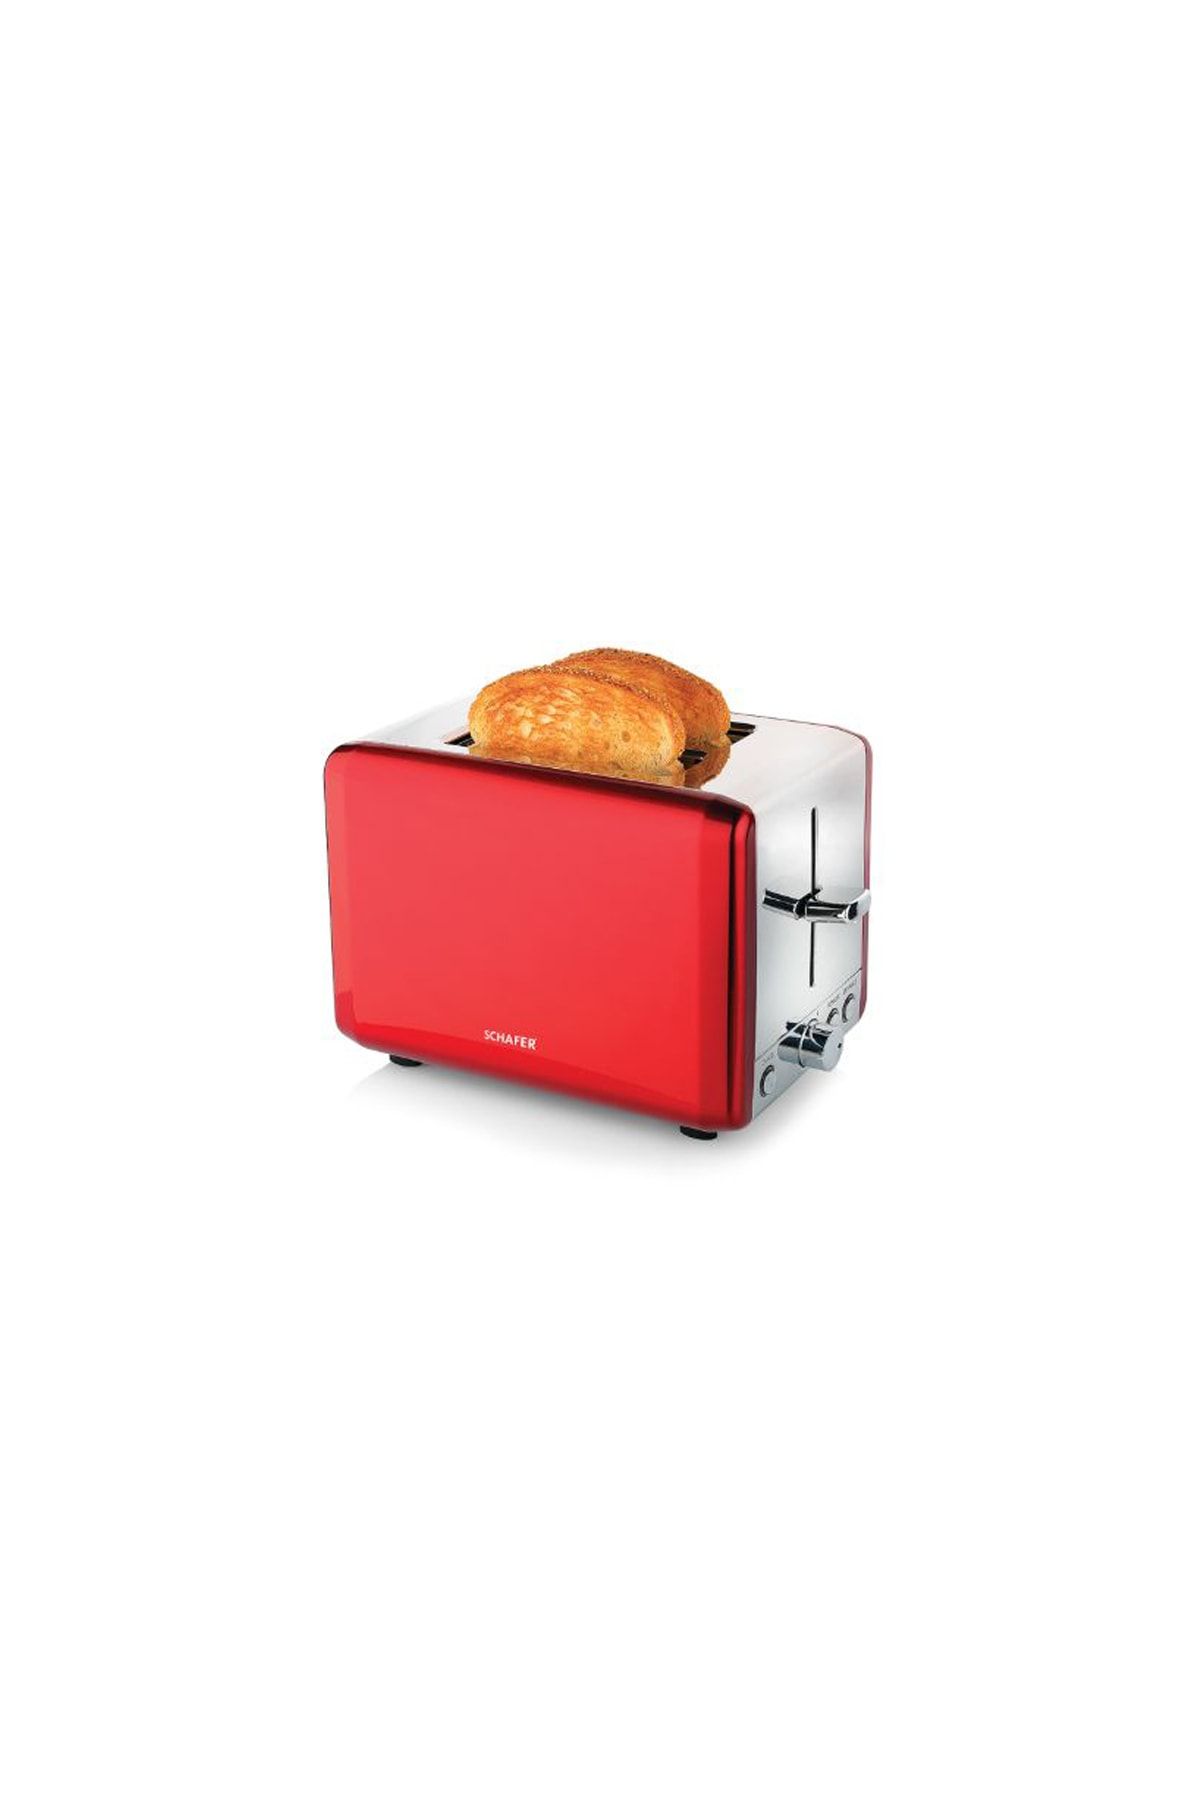 Schafer Küchenchefs 6 Kademeli Ekmek Kızartma Makinesi (2 Renk)